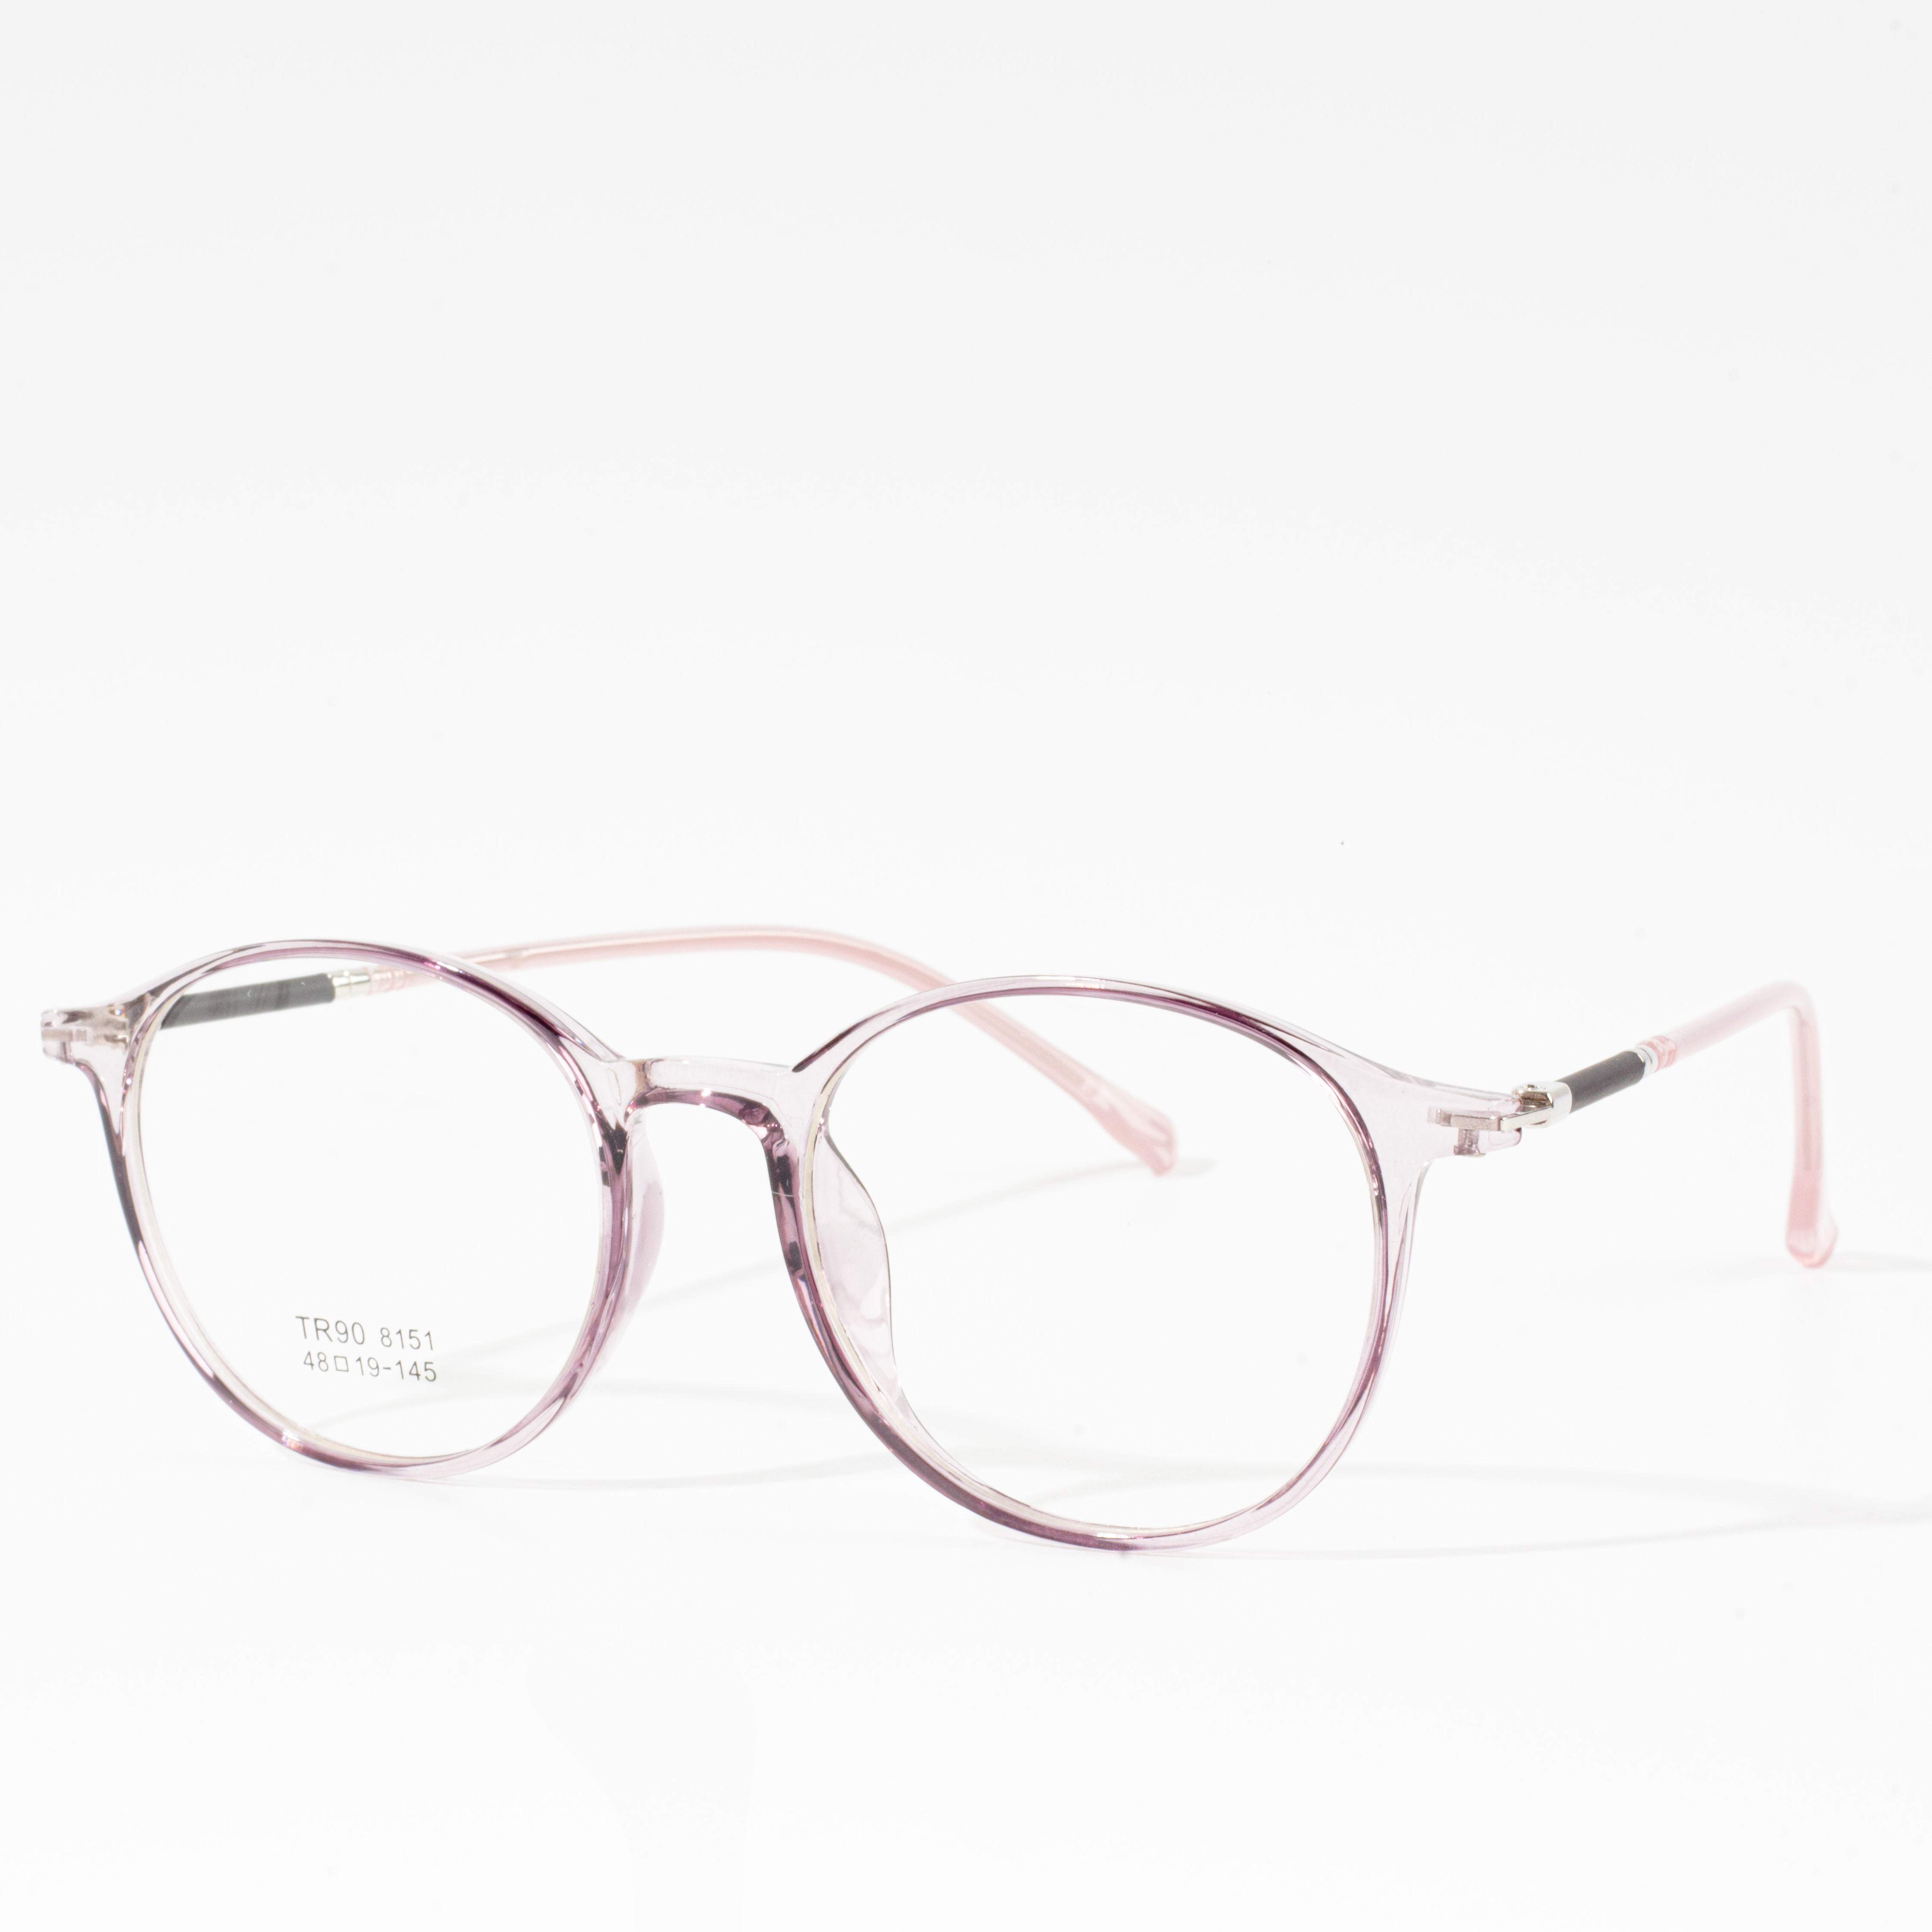 მამაკაცის და ქალის დიზაინერის ჩარჩოები - Eyeglasses.com 广告· https://www.eyeglasses.com/ (888) 896-3885 შეიძინეთ სათვალეების დიზაინერული ჩარჩოები გლობალური სათვალეების საუკეთესო ბრენდებიდან ნახევრად დაბალი საცალო ფასებით დღეს.